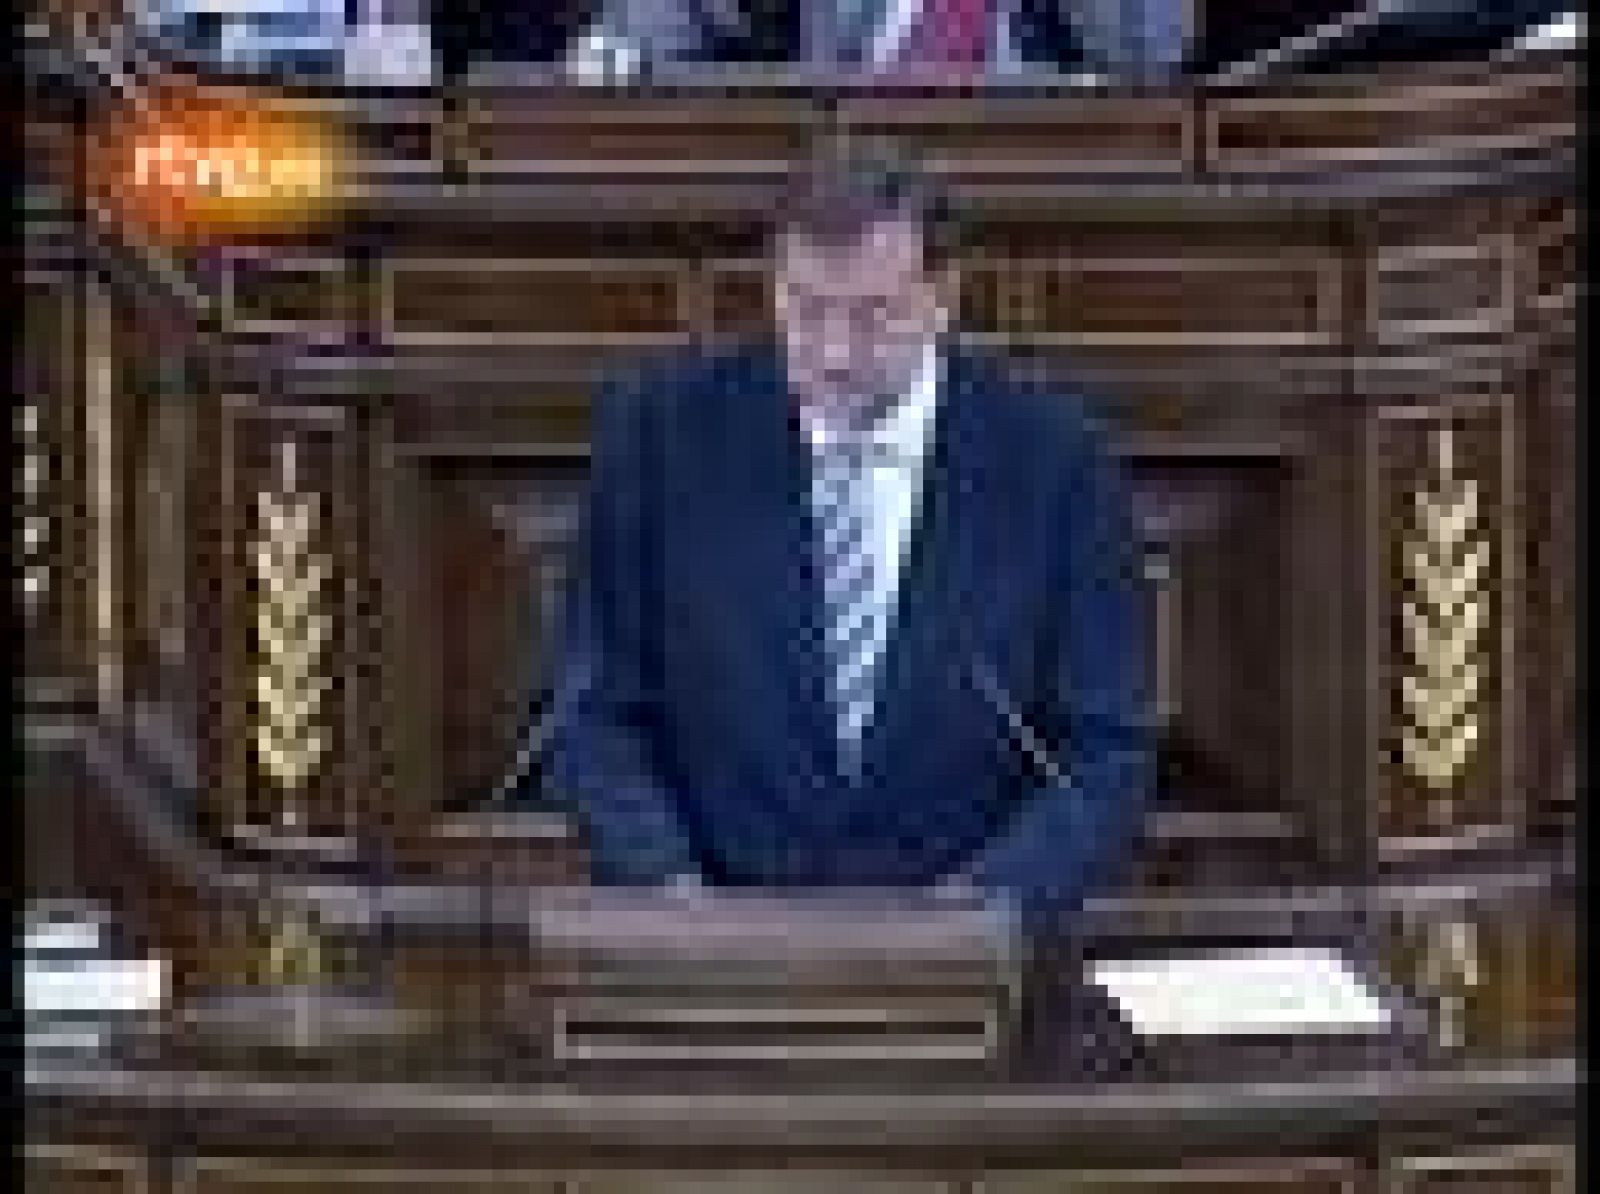  El líder del PP, Mariano Rajoy, ha criticado el "falso diagnóstico" que el presidente del Gobierno hace la crisis económica y asegura que "no hay manera de tapar el agujero de las cuentas públicas creado por el Gobierno".